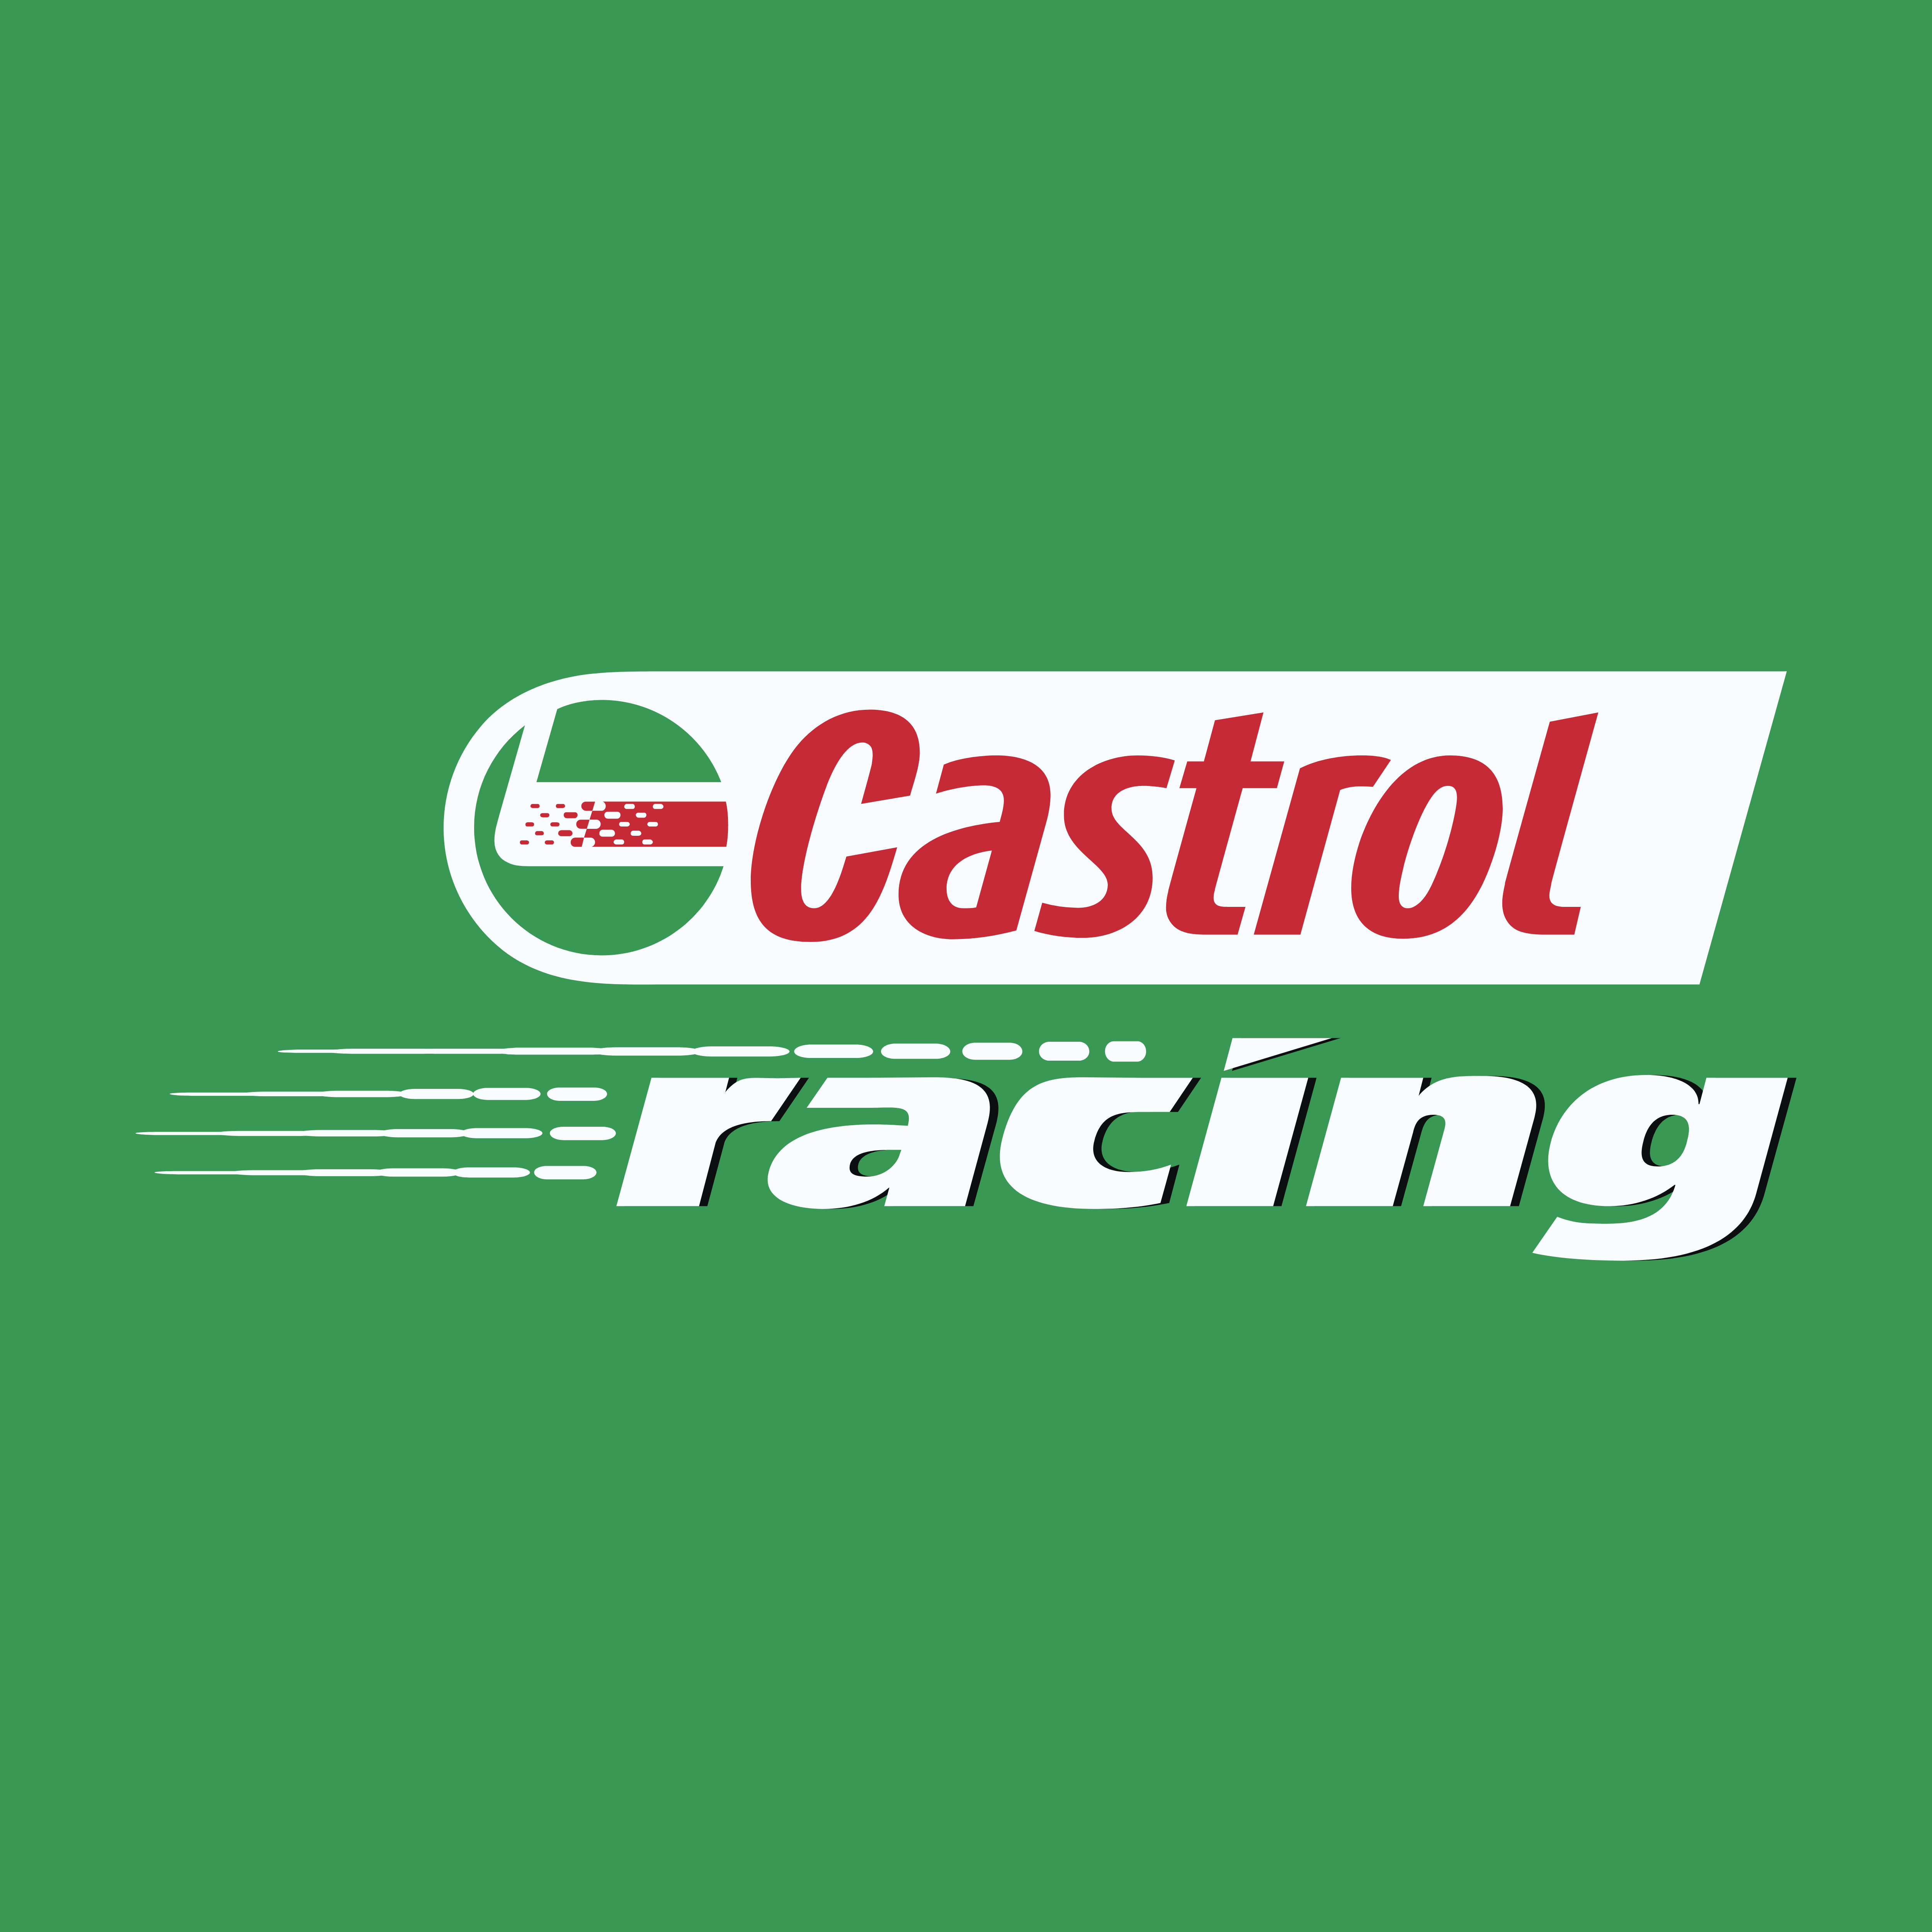 Castrol Logos Download